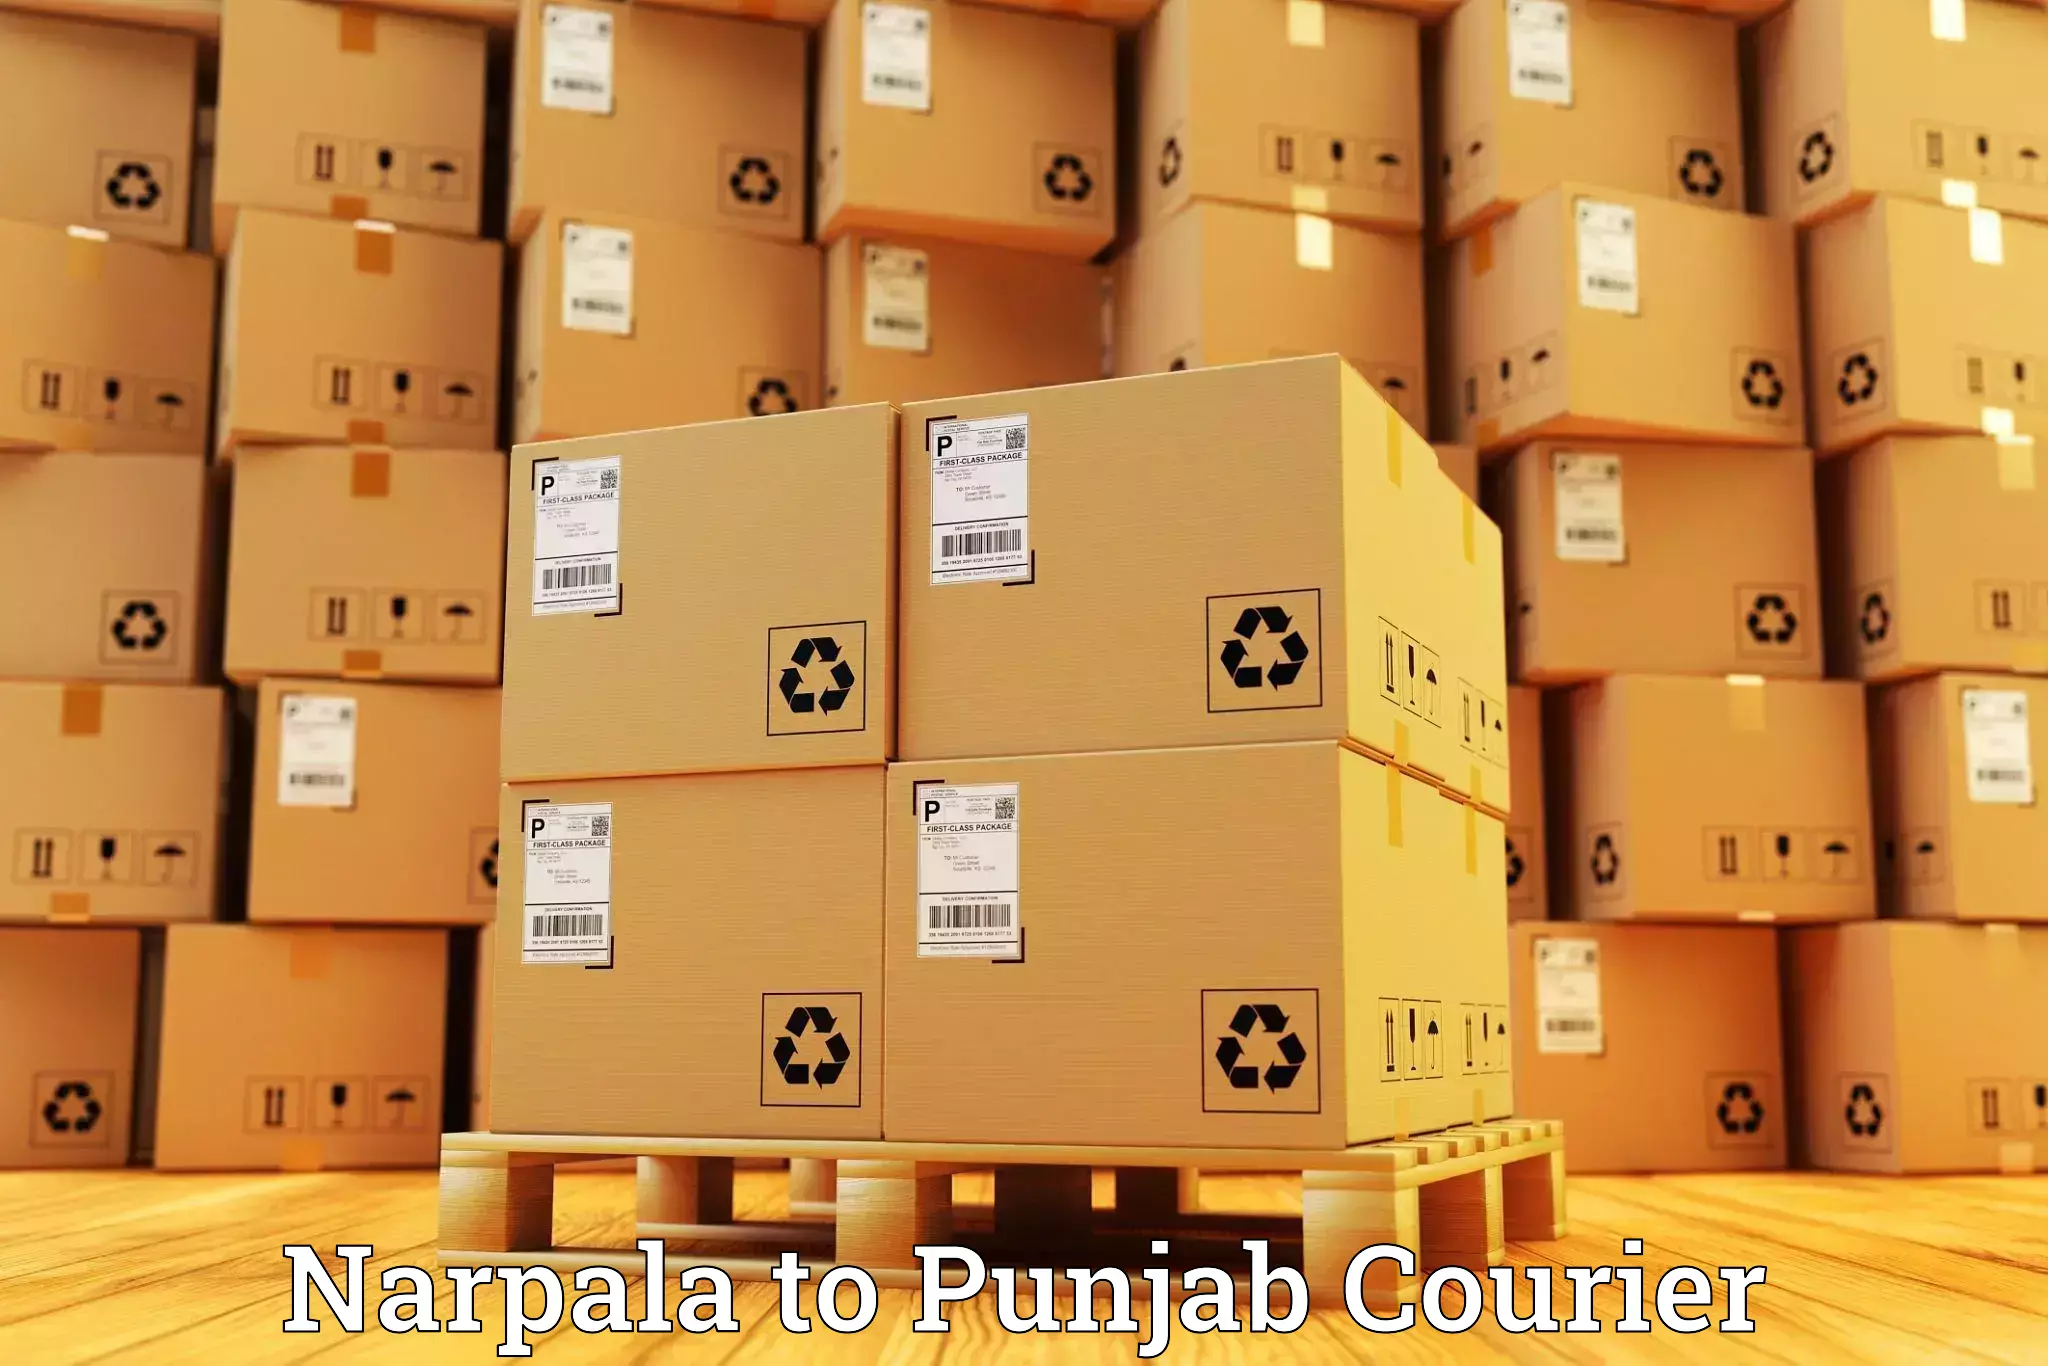 Global shipping solutions Narpala to Dinanagar